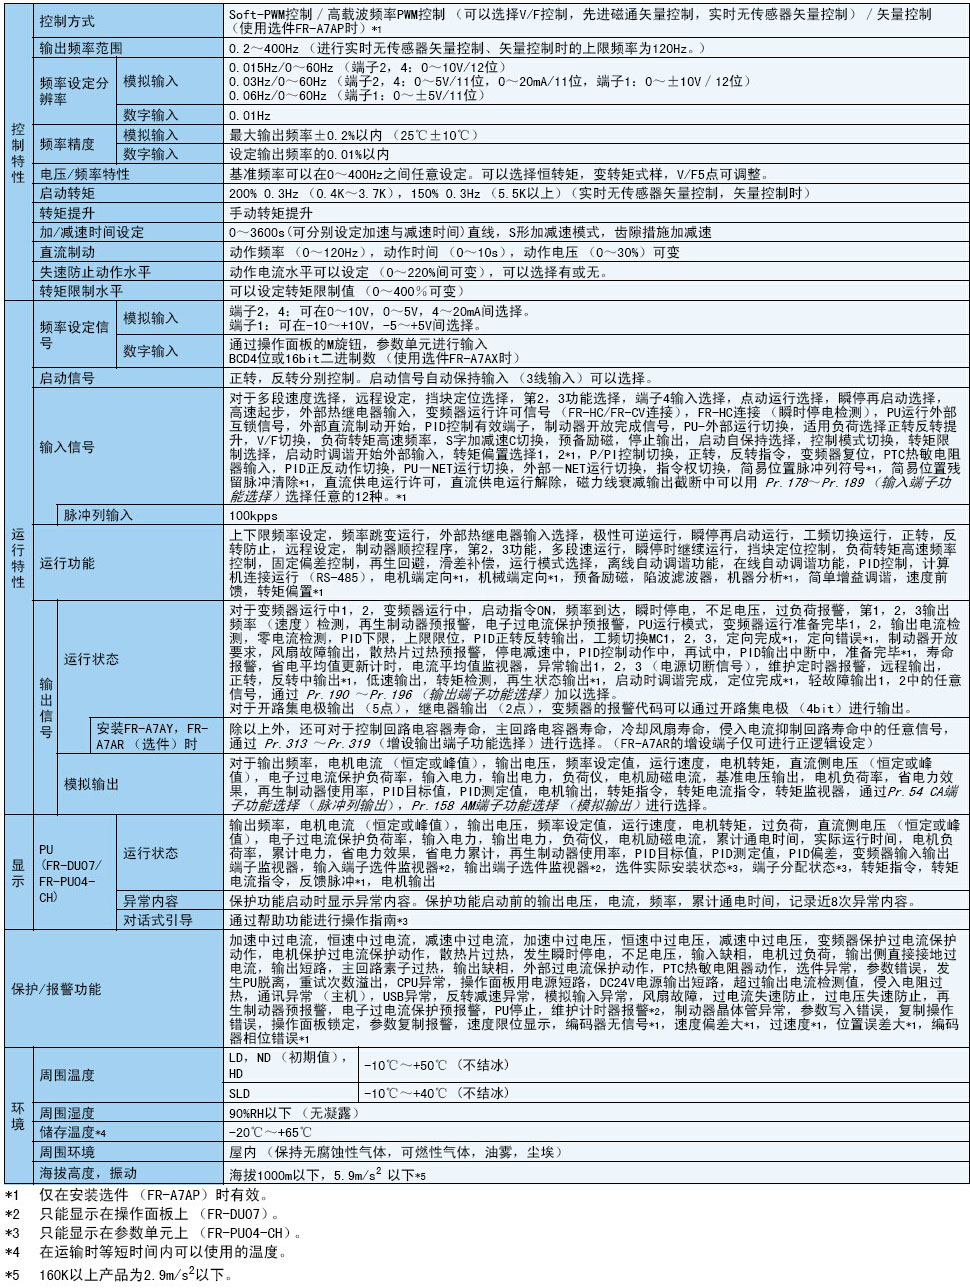  FR-A740-250K-CHT 三菱变频器 740-250K-CHT价格A740-250K供应商 A740 250K低价销售(图1)